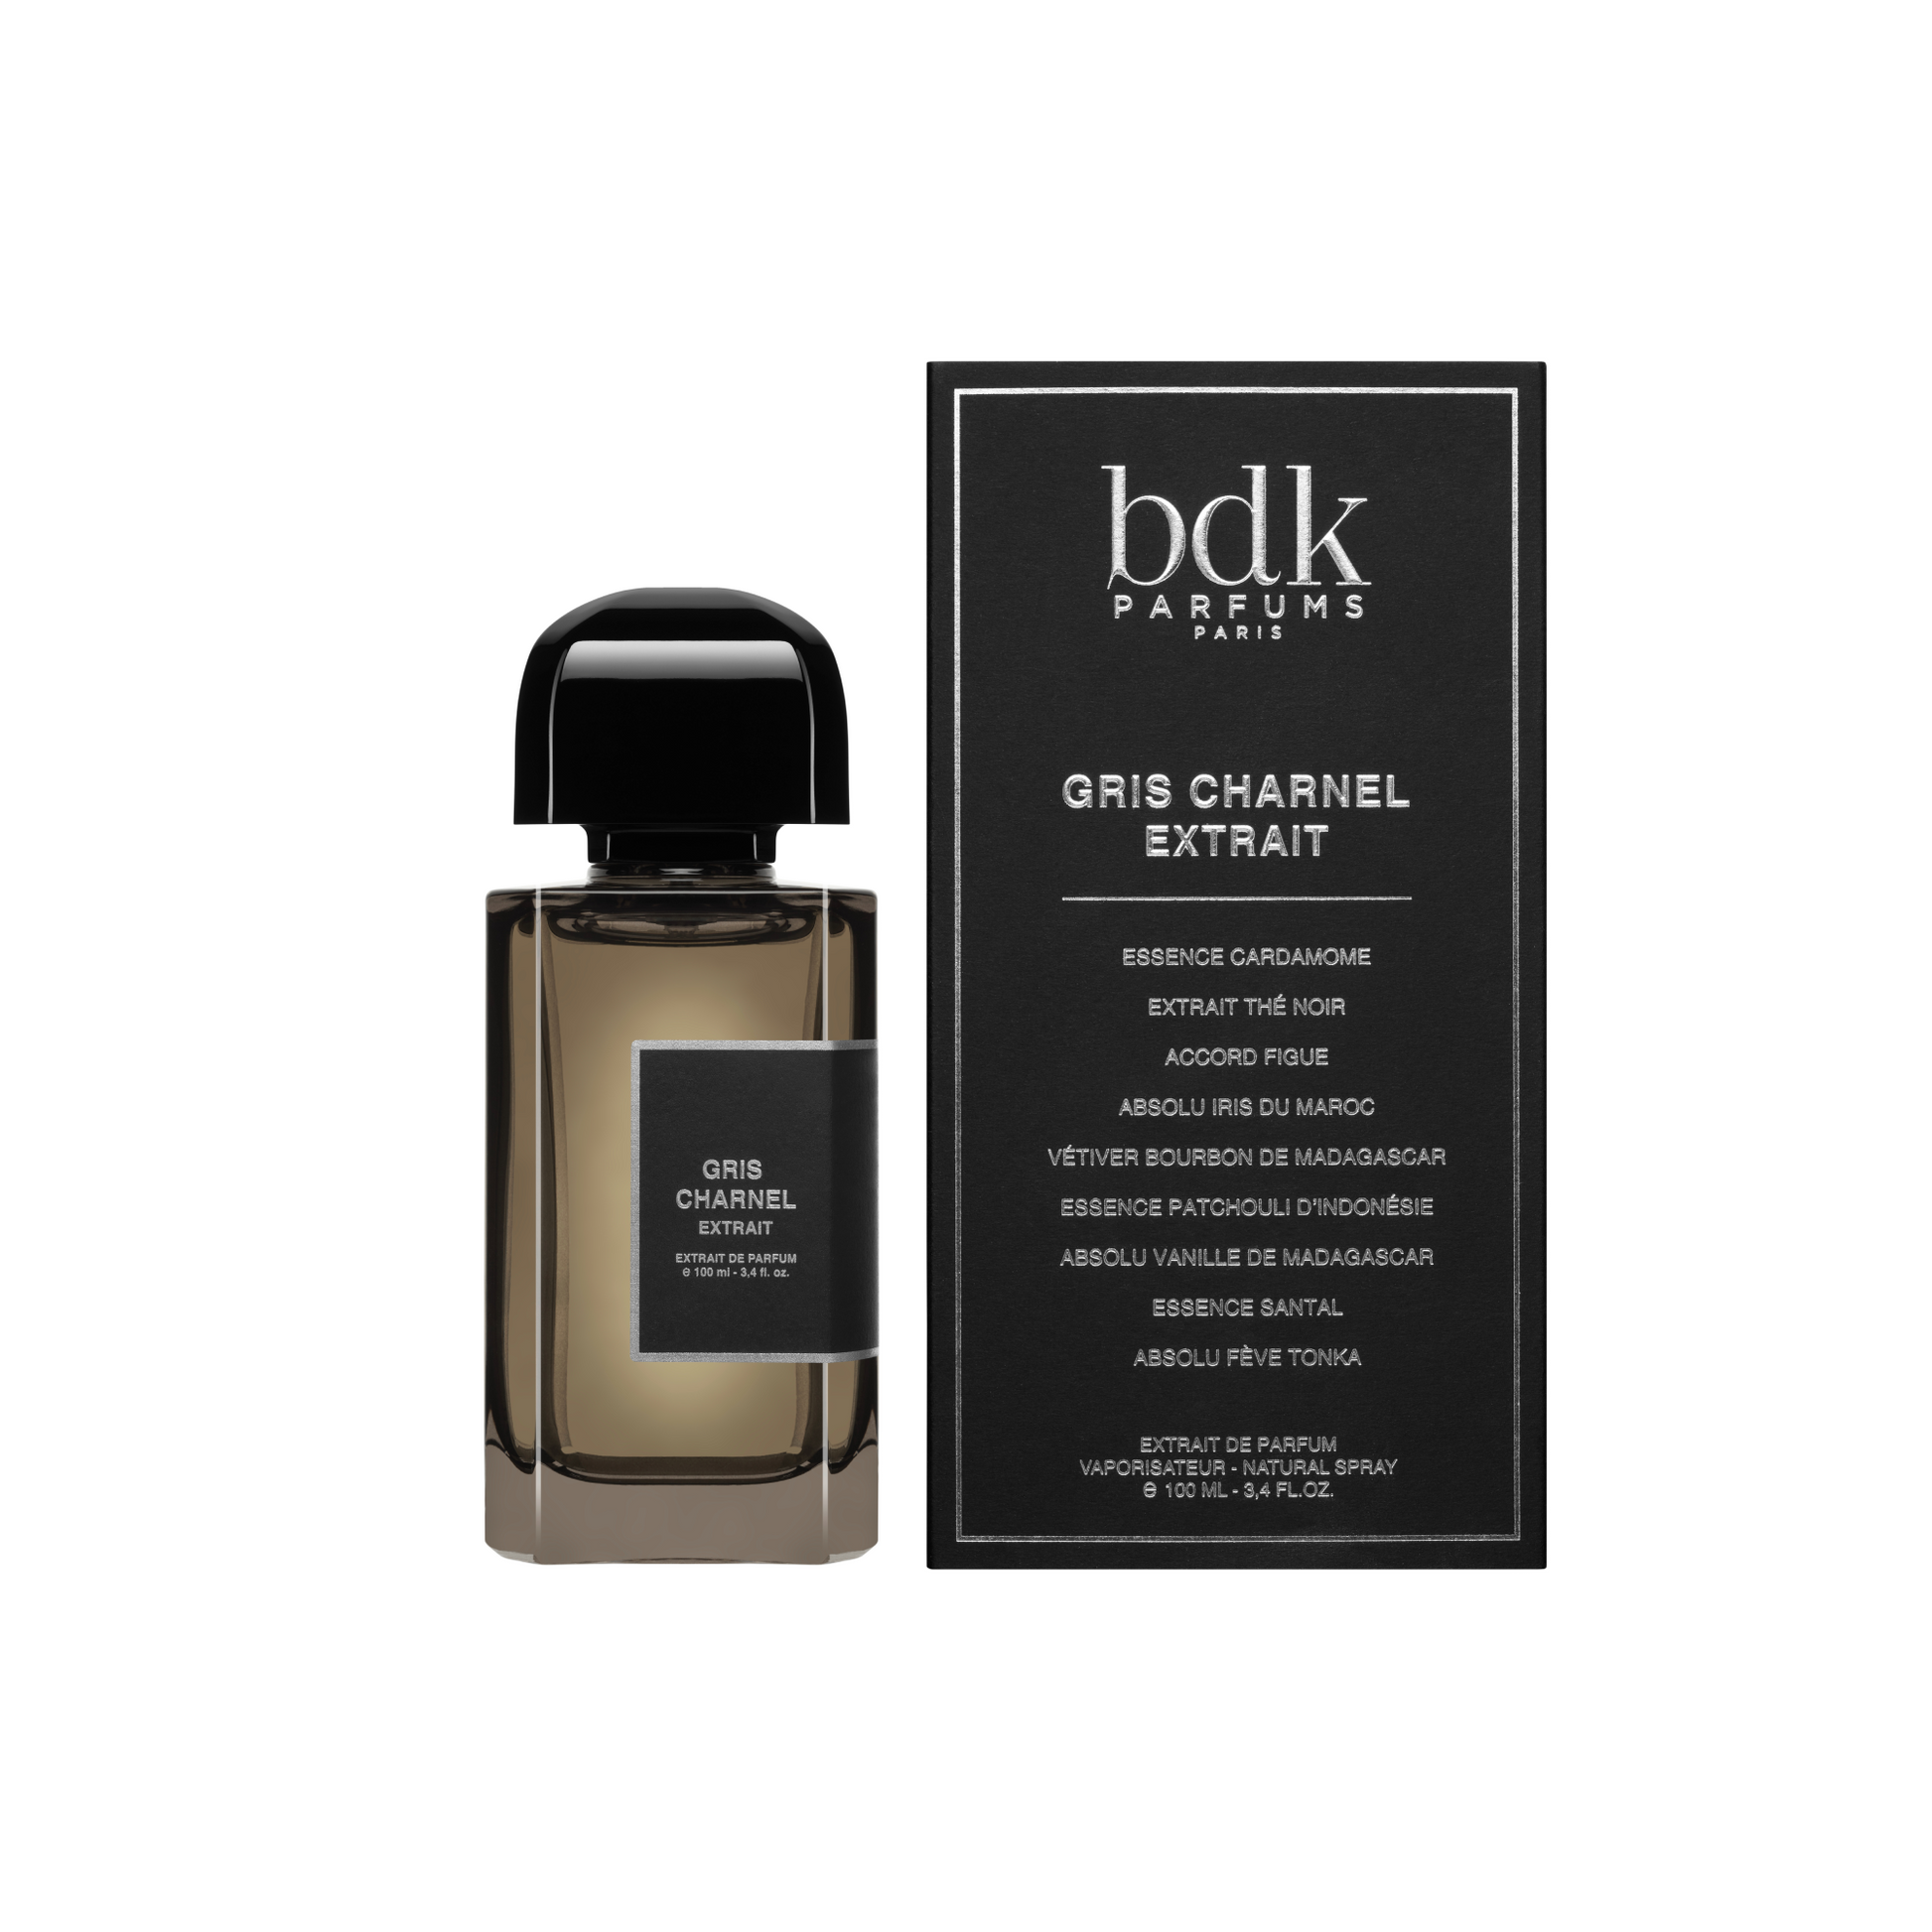 BDK Parfums Paris Gris Charnel Extrait Decant Spray Sample 